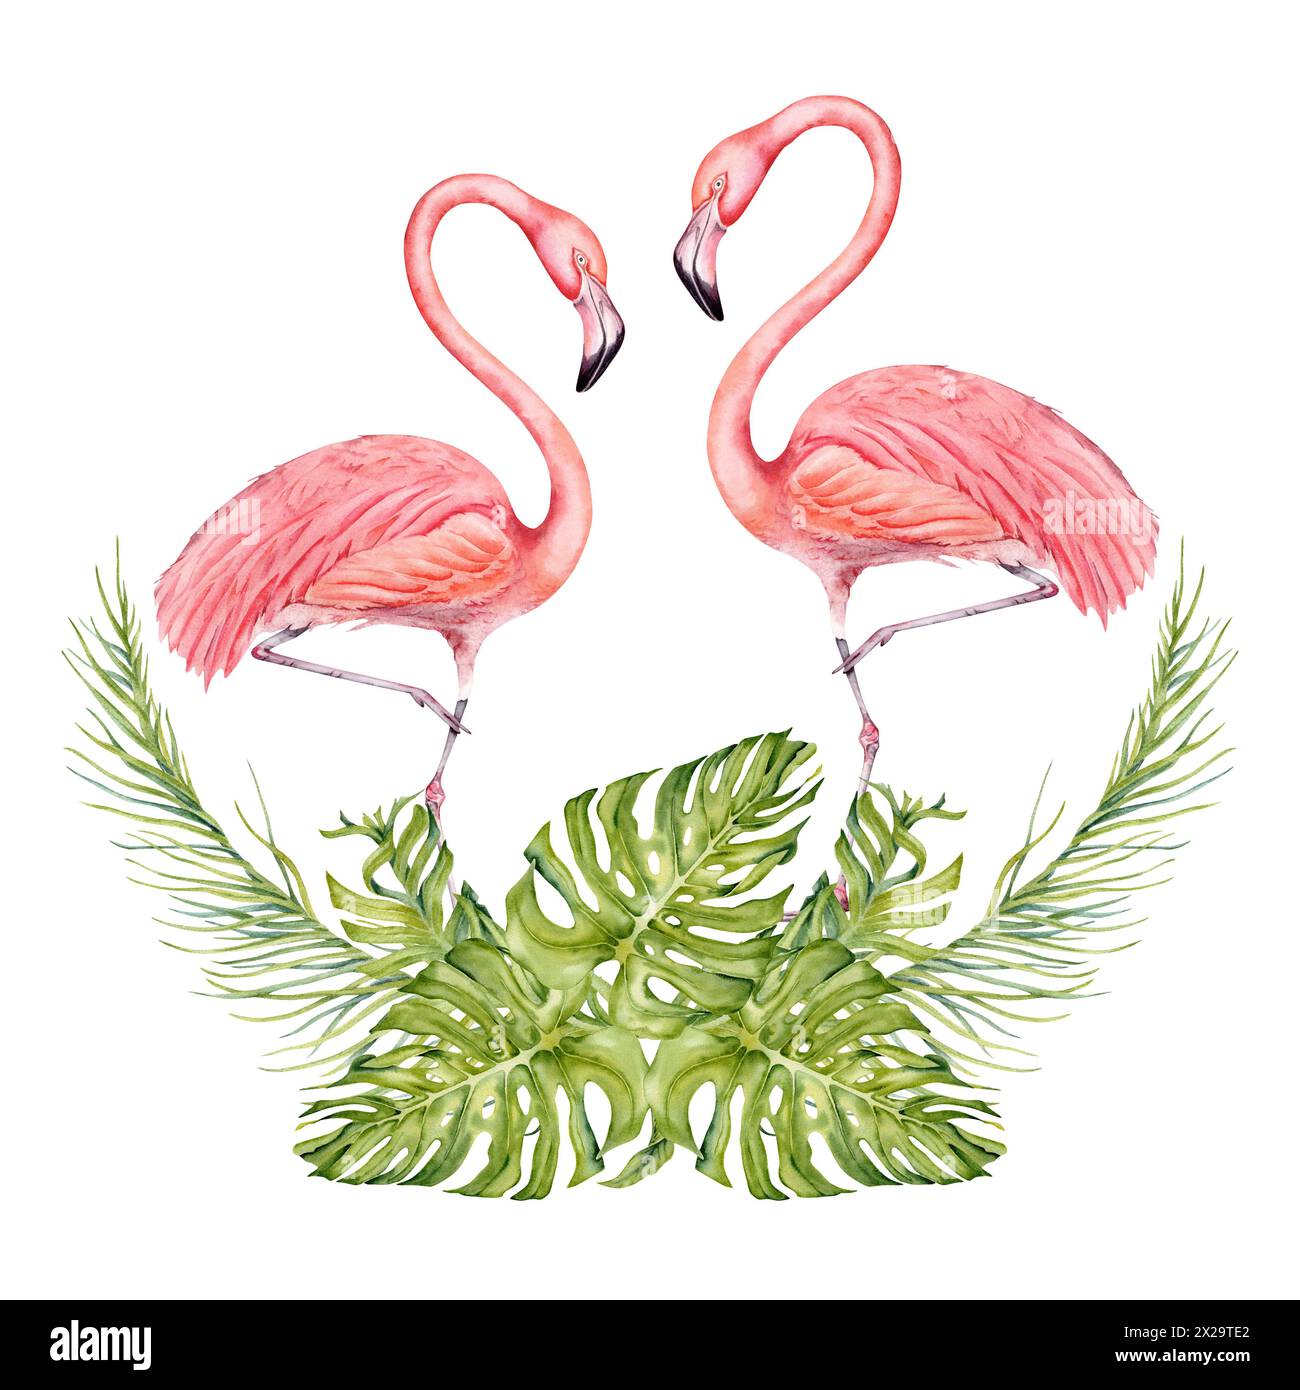 Zwei Flamingovögel mit Banane und Palmenzweige mit Monsterablättern Aquarellkomposition Hand gezeichnete Illustration isoliert auf weißem Hintergrund Stockfoto